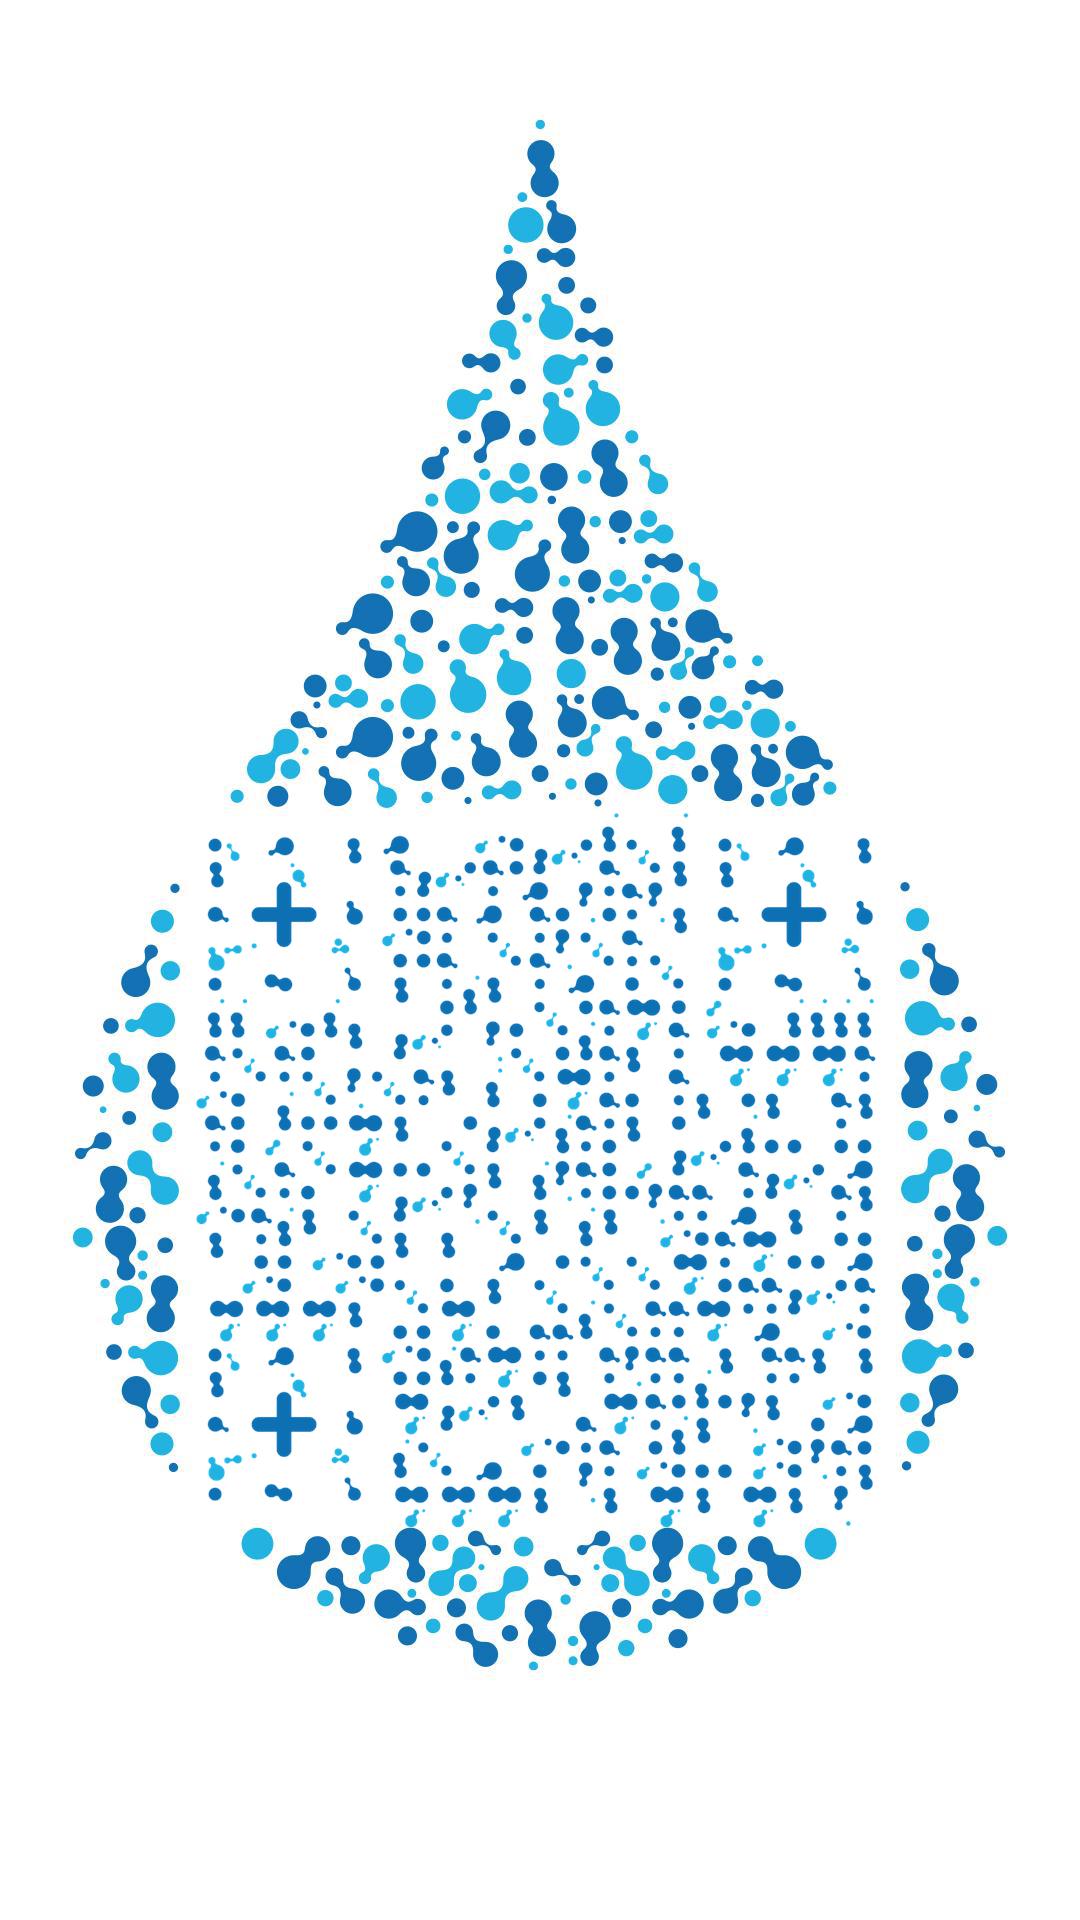 水滴水珠扫码买水矿泉水图案节约用水保护环境二维码生成器-平面静态-手机海报